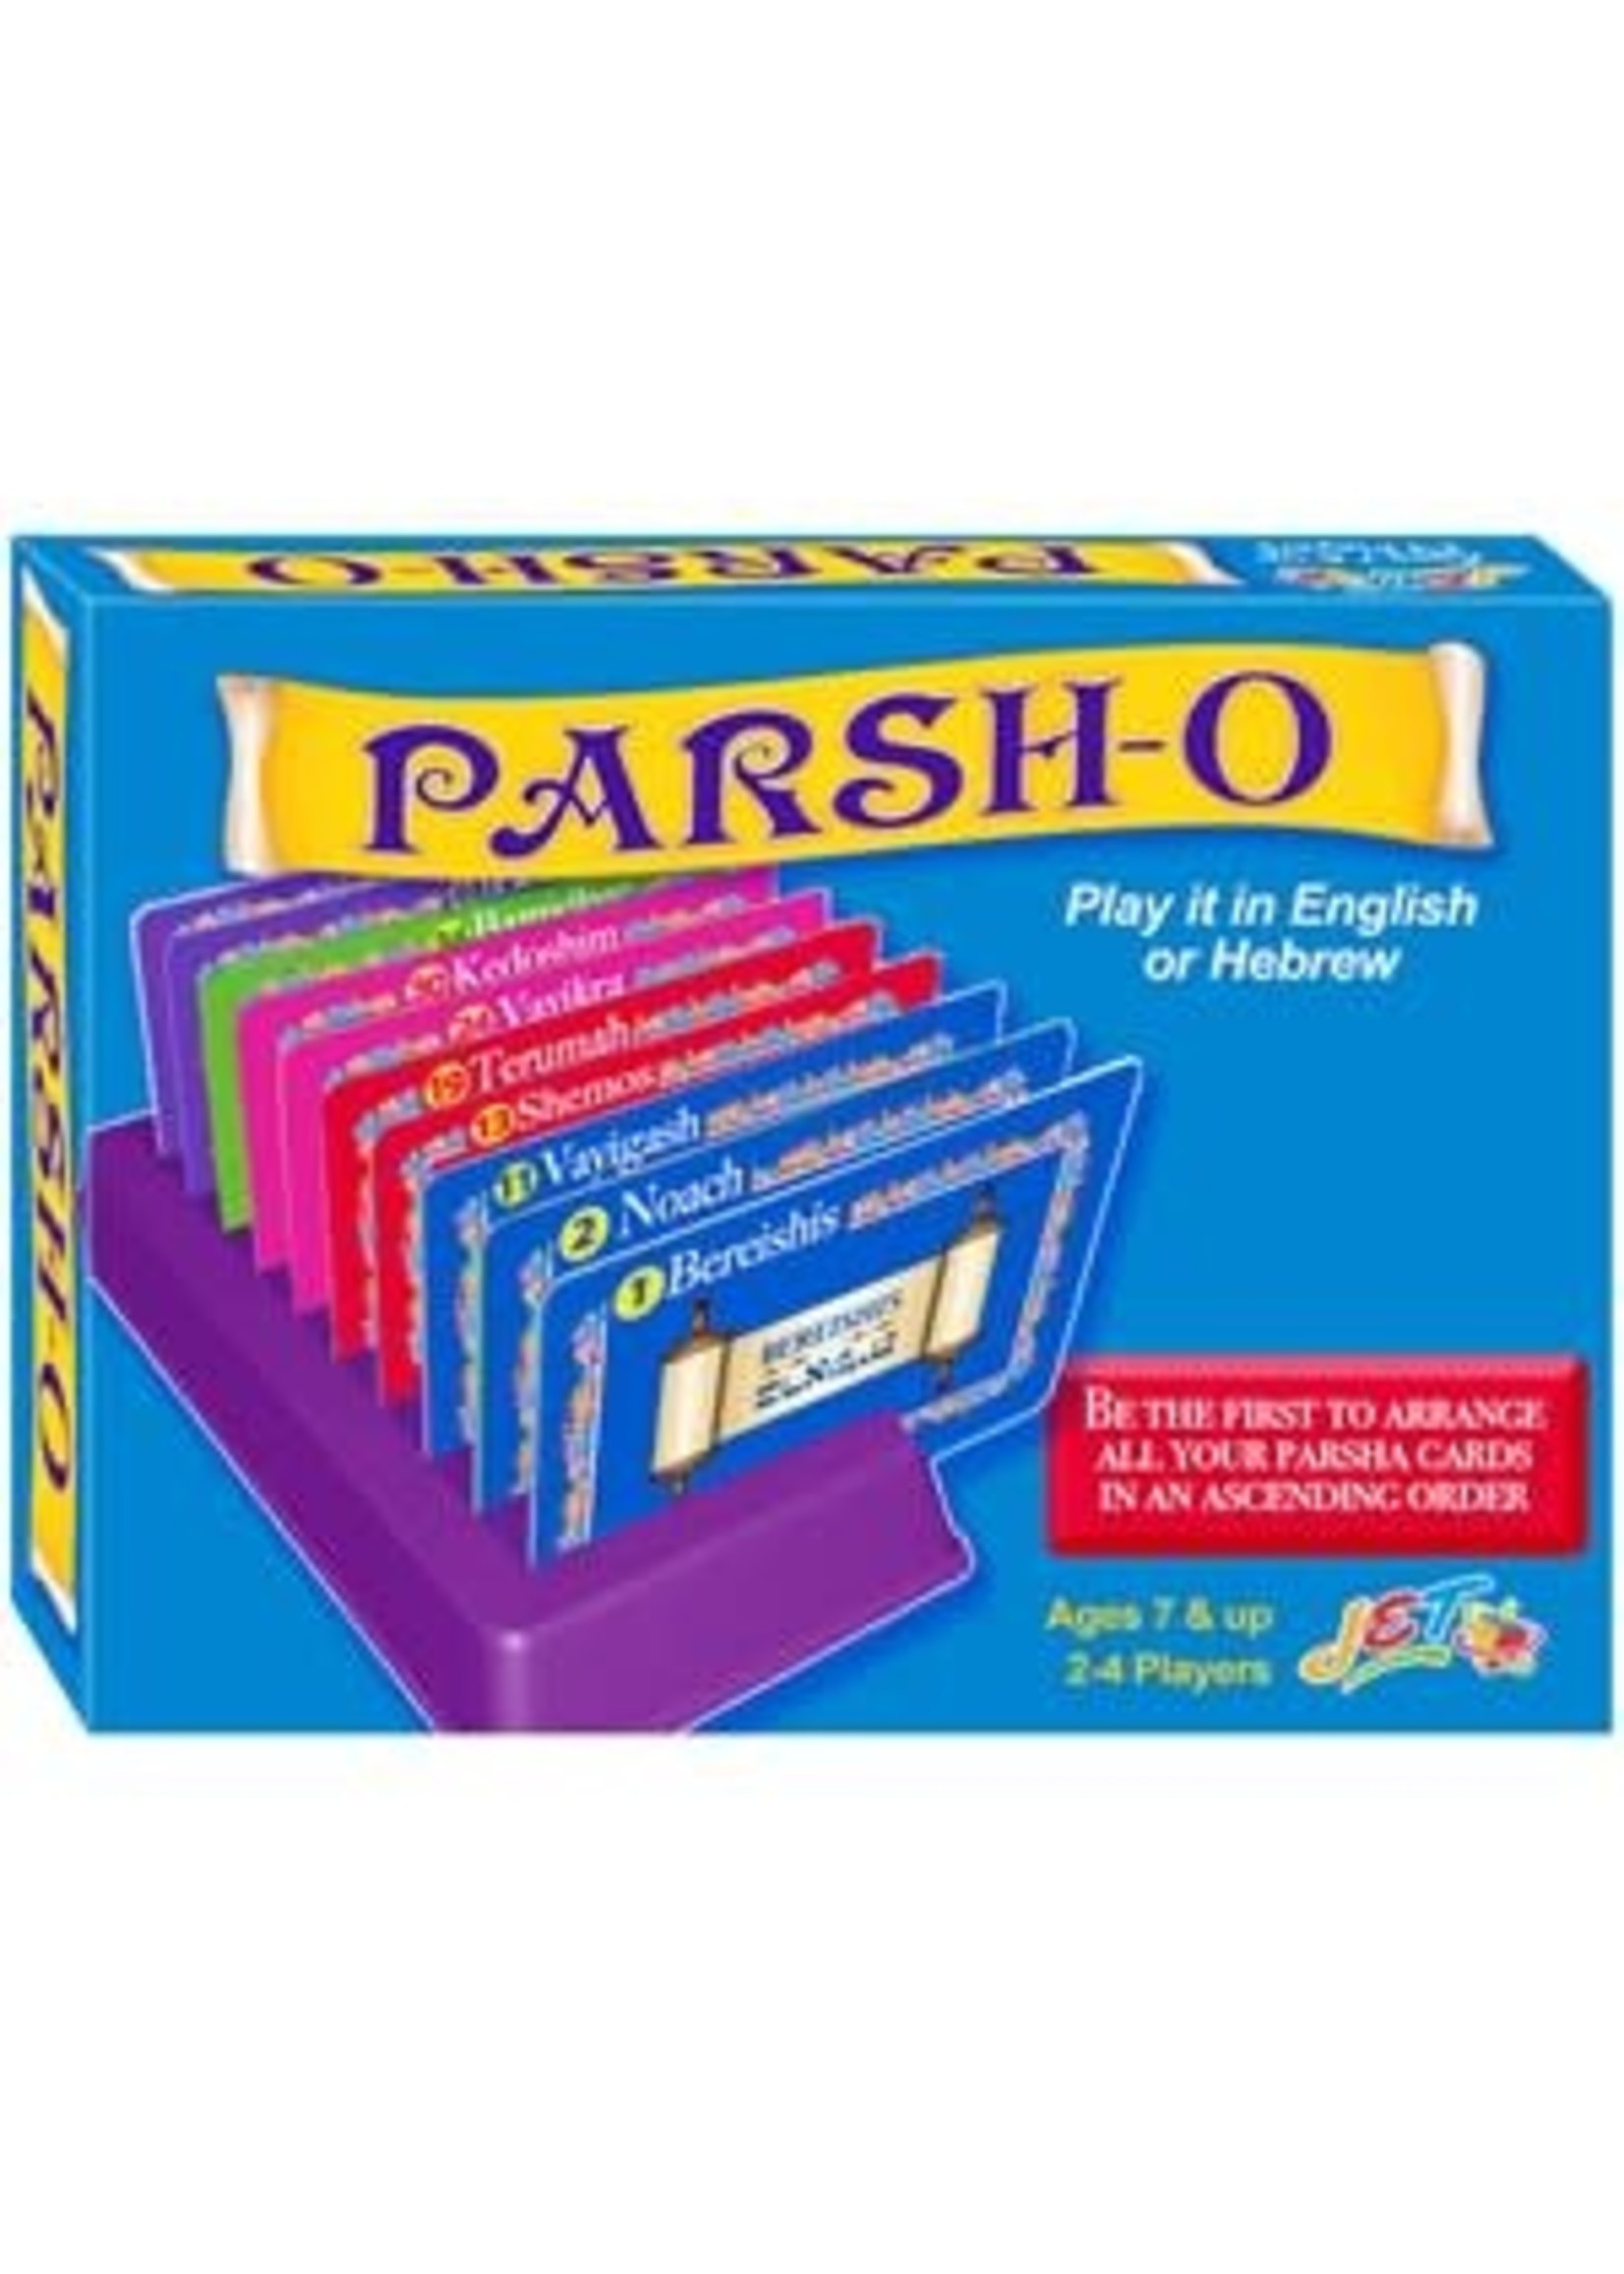 PARSAH-O - GAME